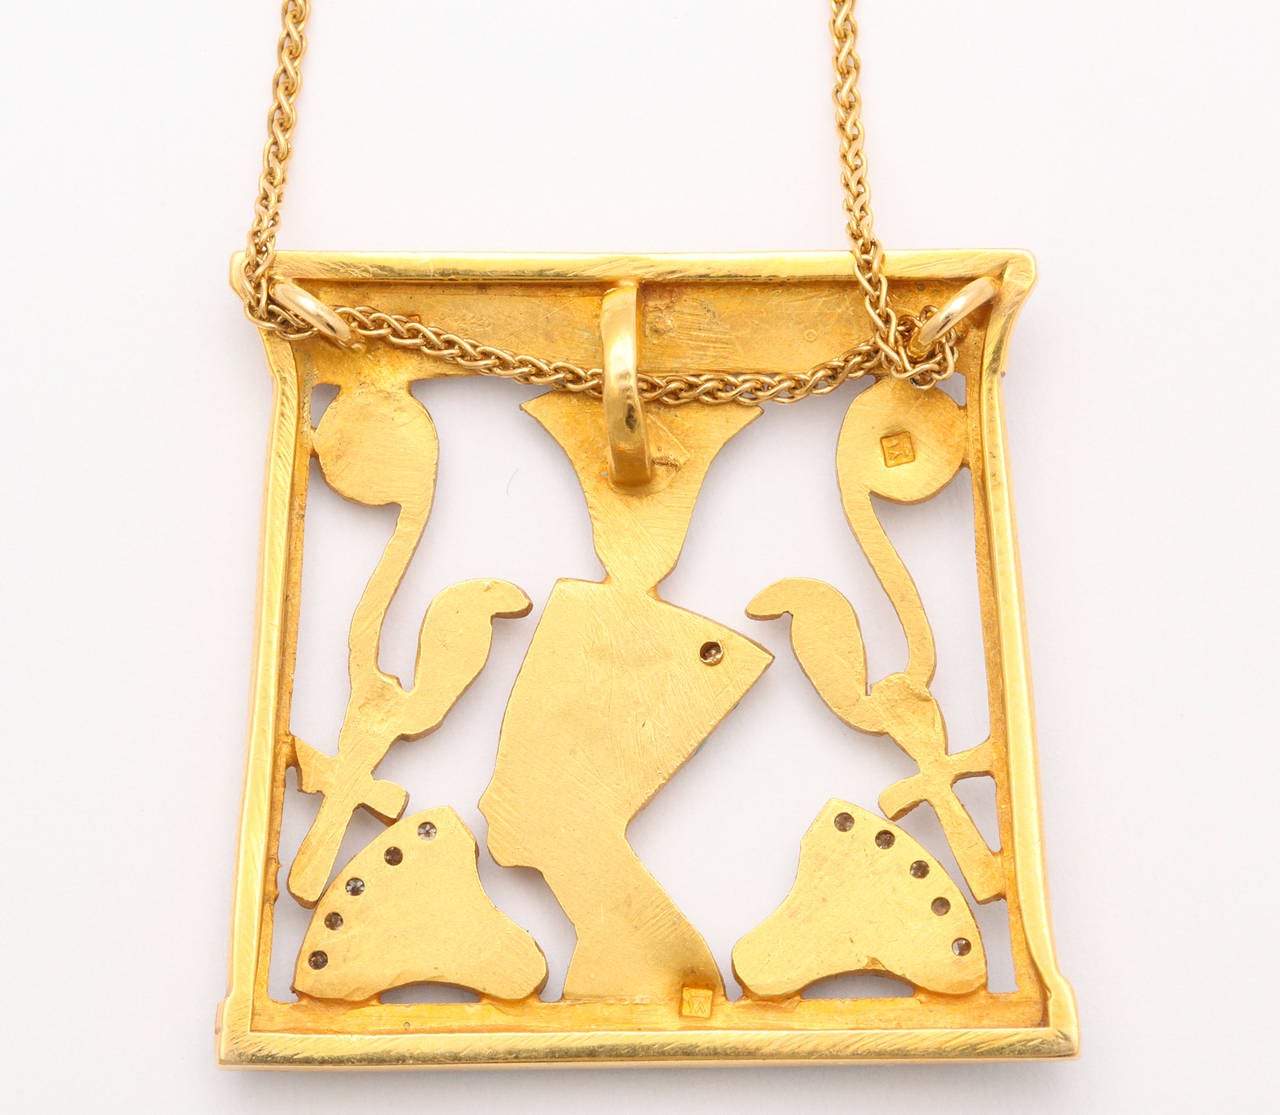 Egyptian Revival 1970s Egyptian Themed Enamel Diamond Gold Pendant